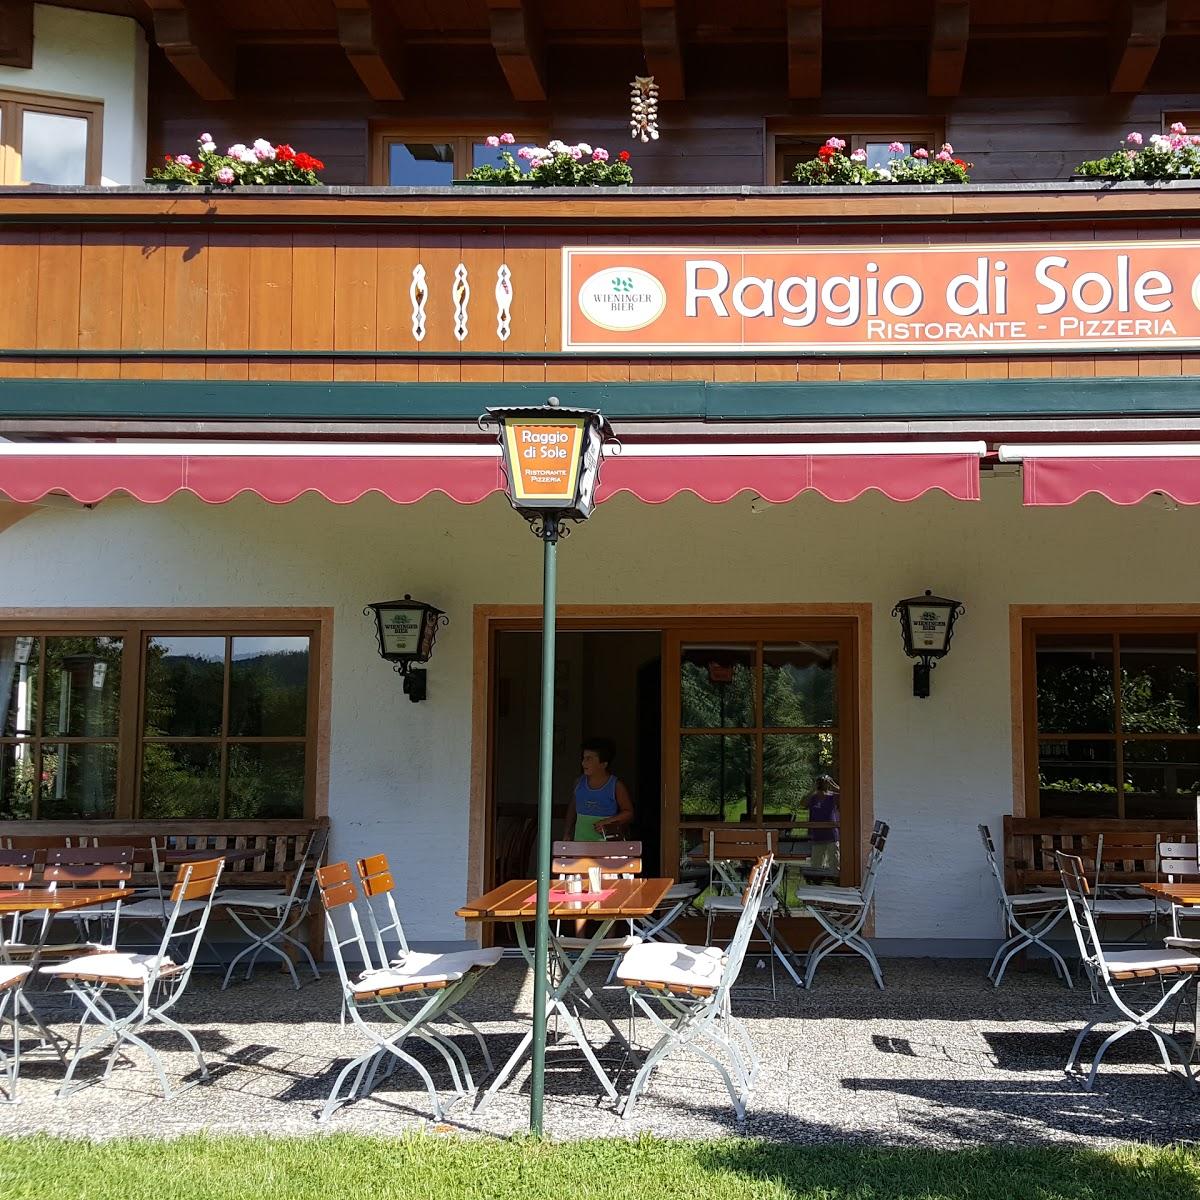 Restaurant "Raggio Di Sole - Ristorante & Pizzeria" in  Schleching